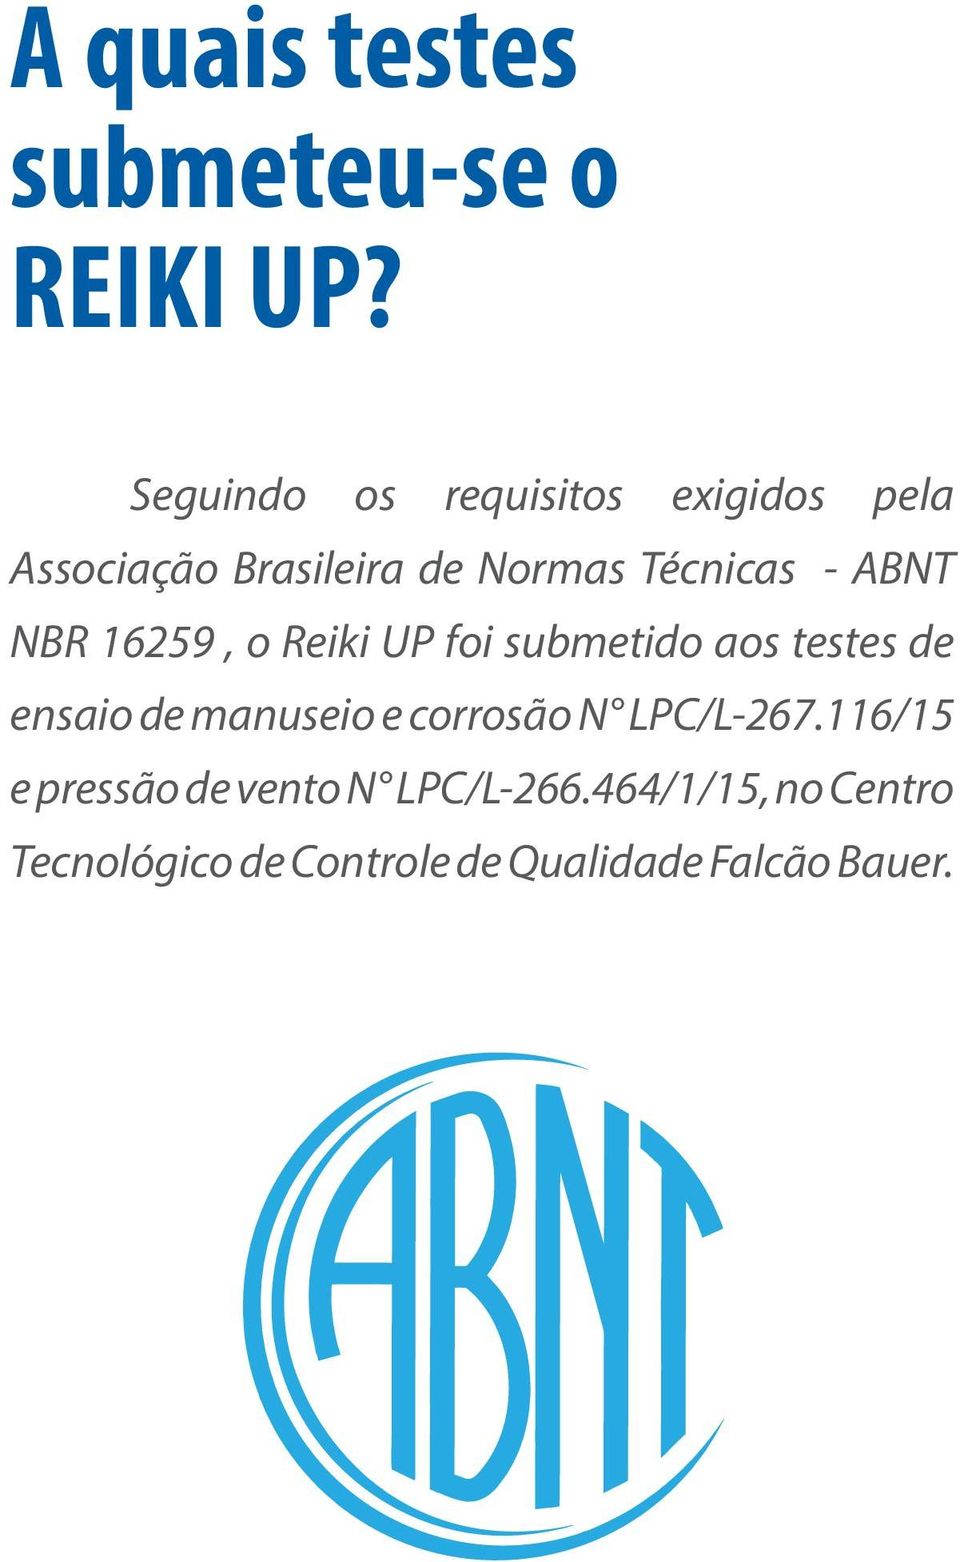 ABNT NBR 16259, o Reiki UP foi submetido aos testes de ensaio de manuseio e